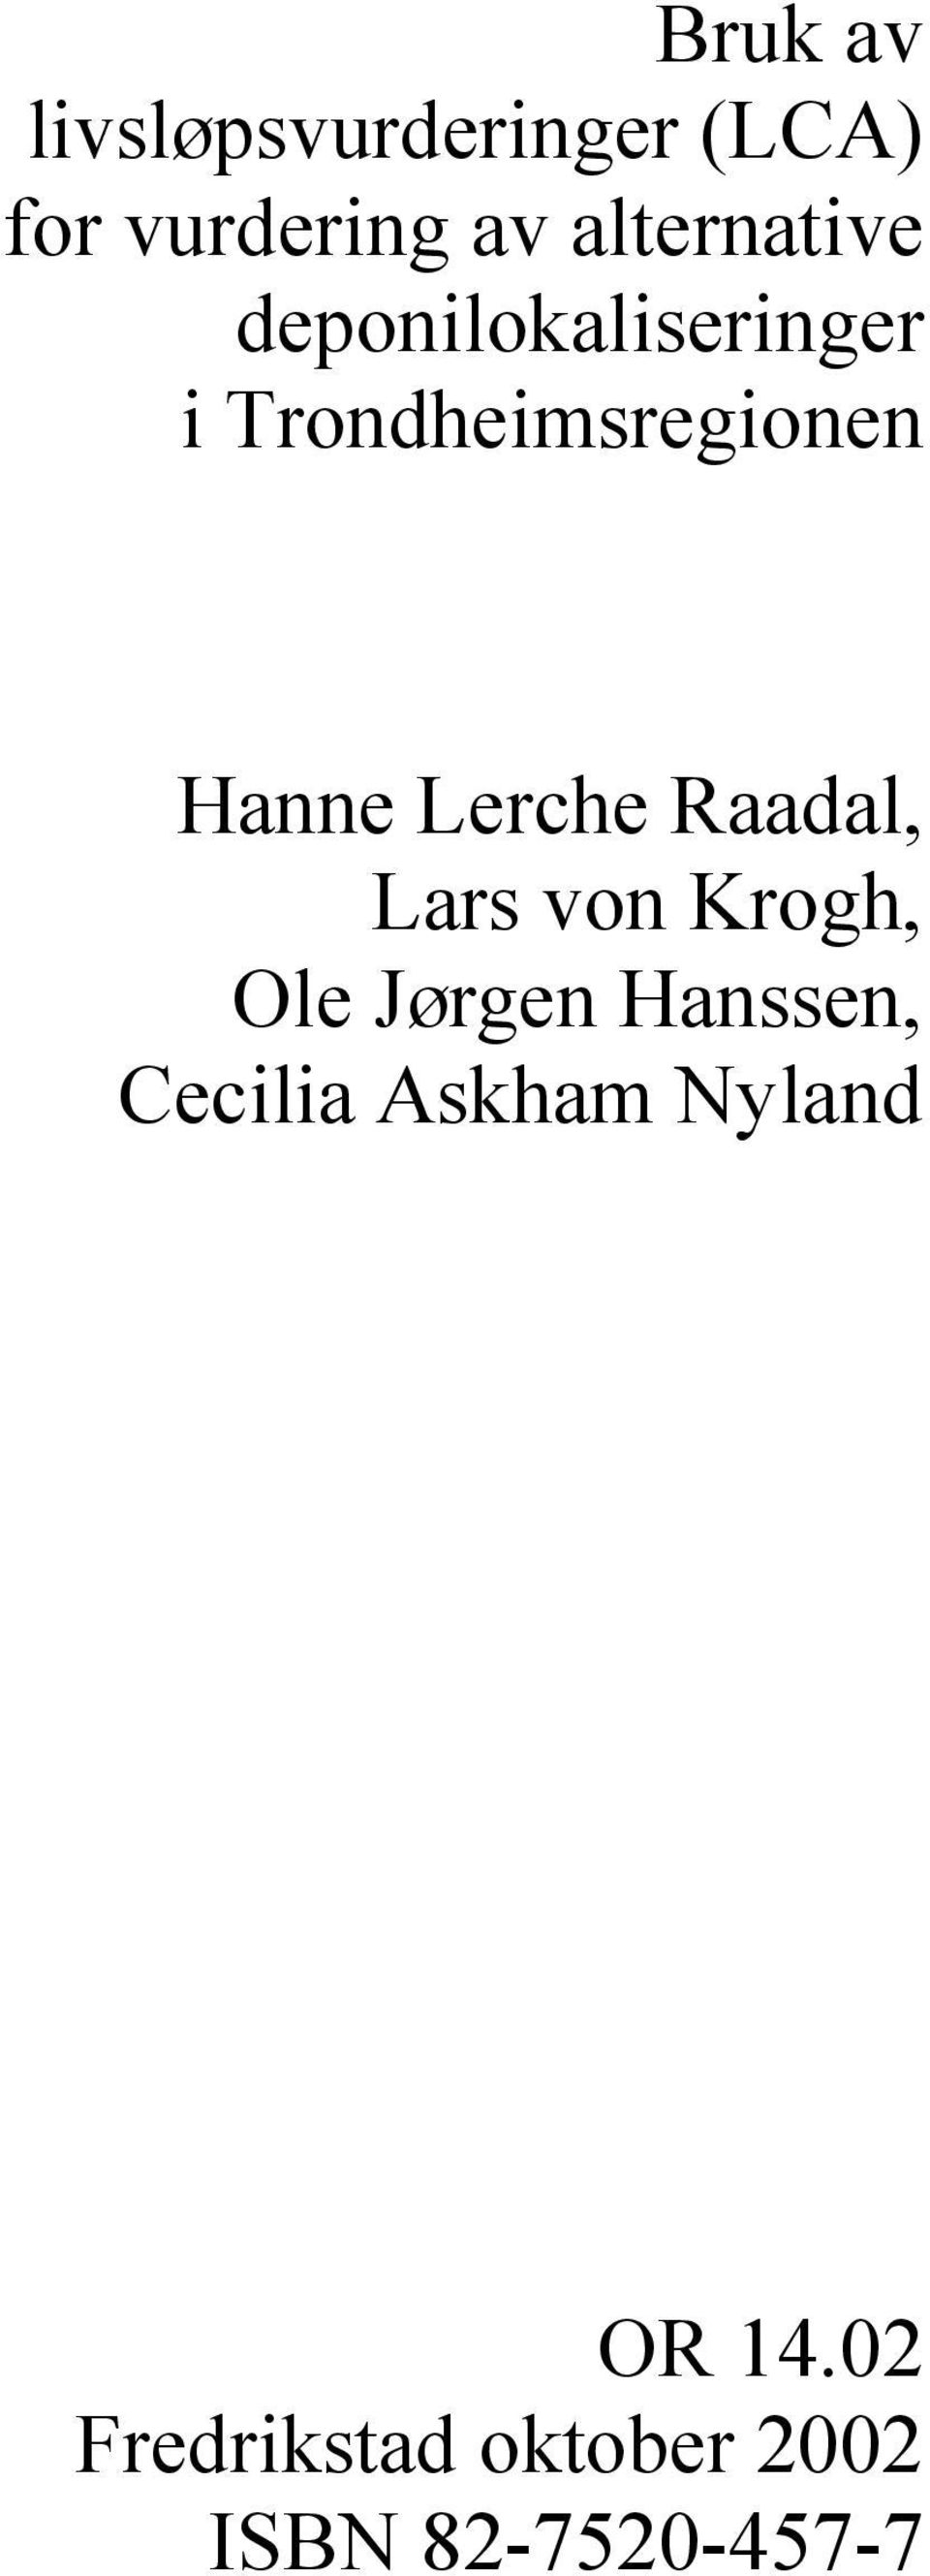 Hanne Lerche Raadal, Lars von Krogh, Ole Jørgen Hanssen,